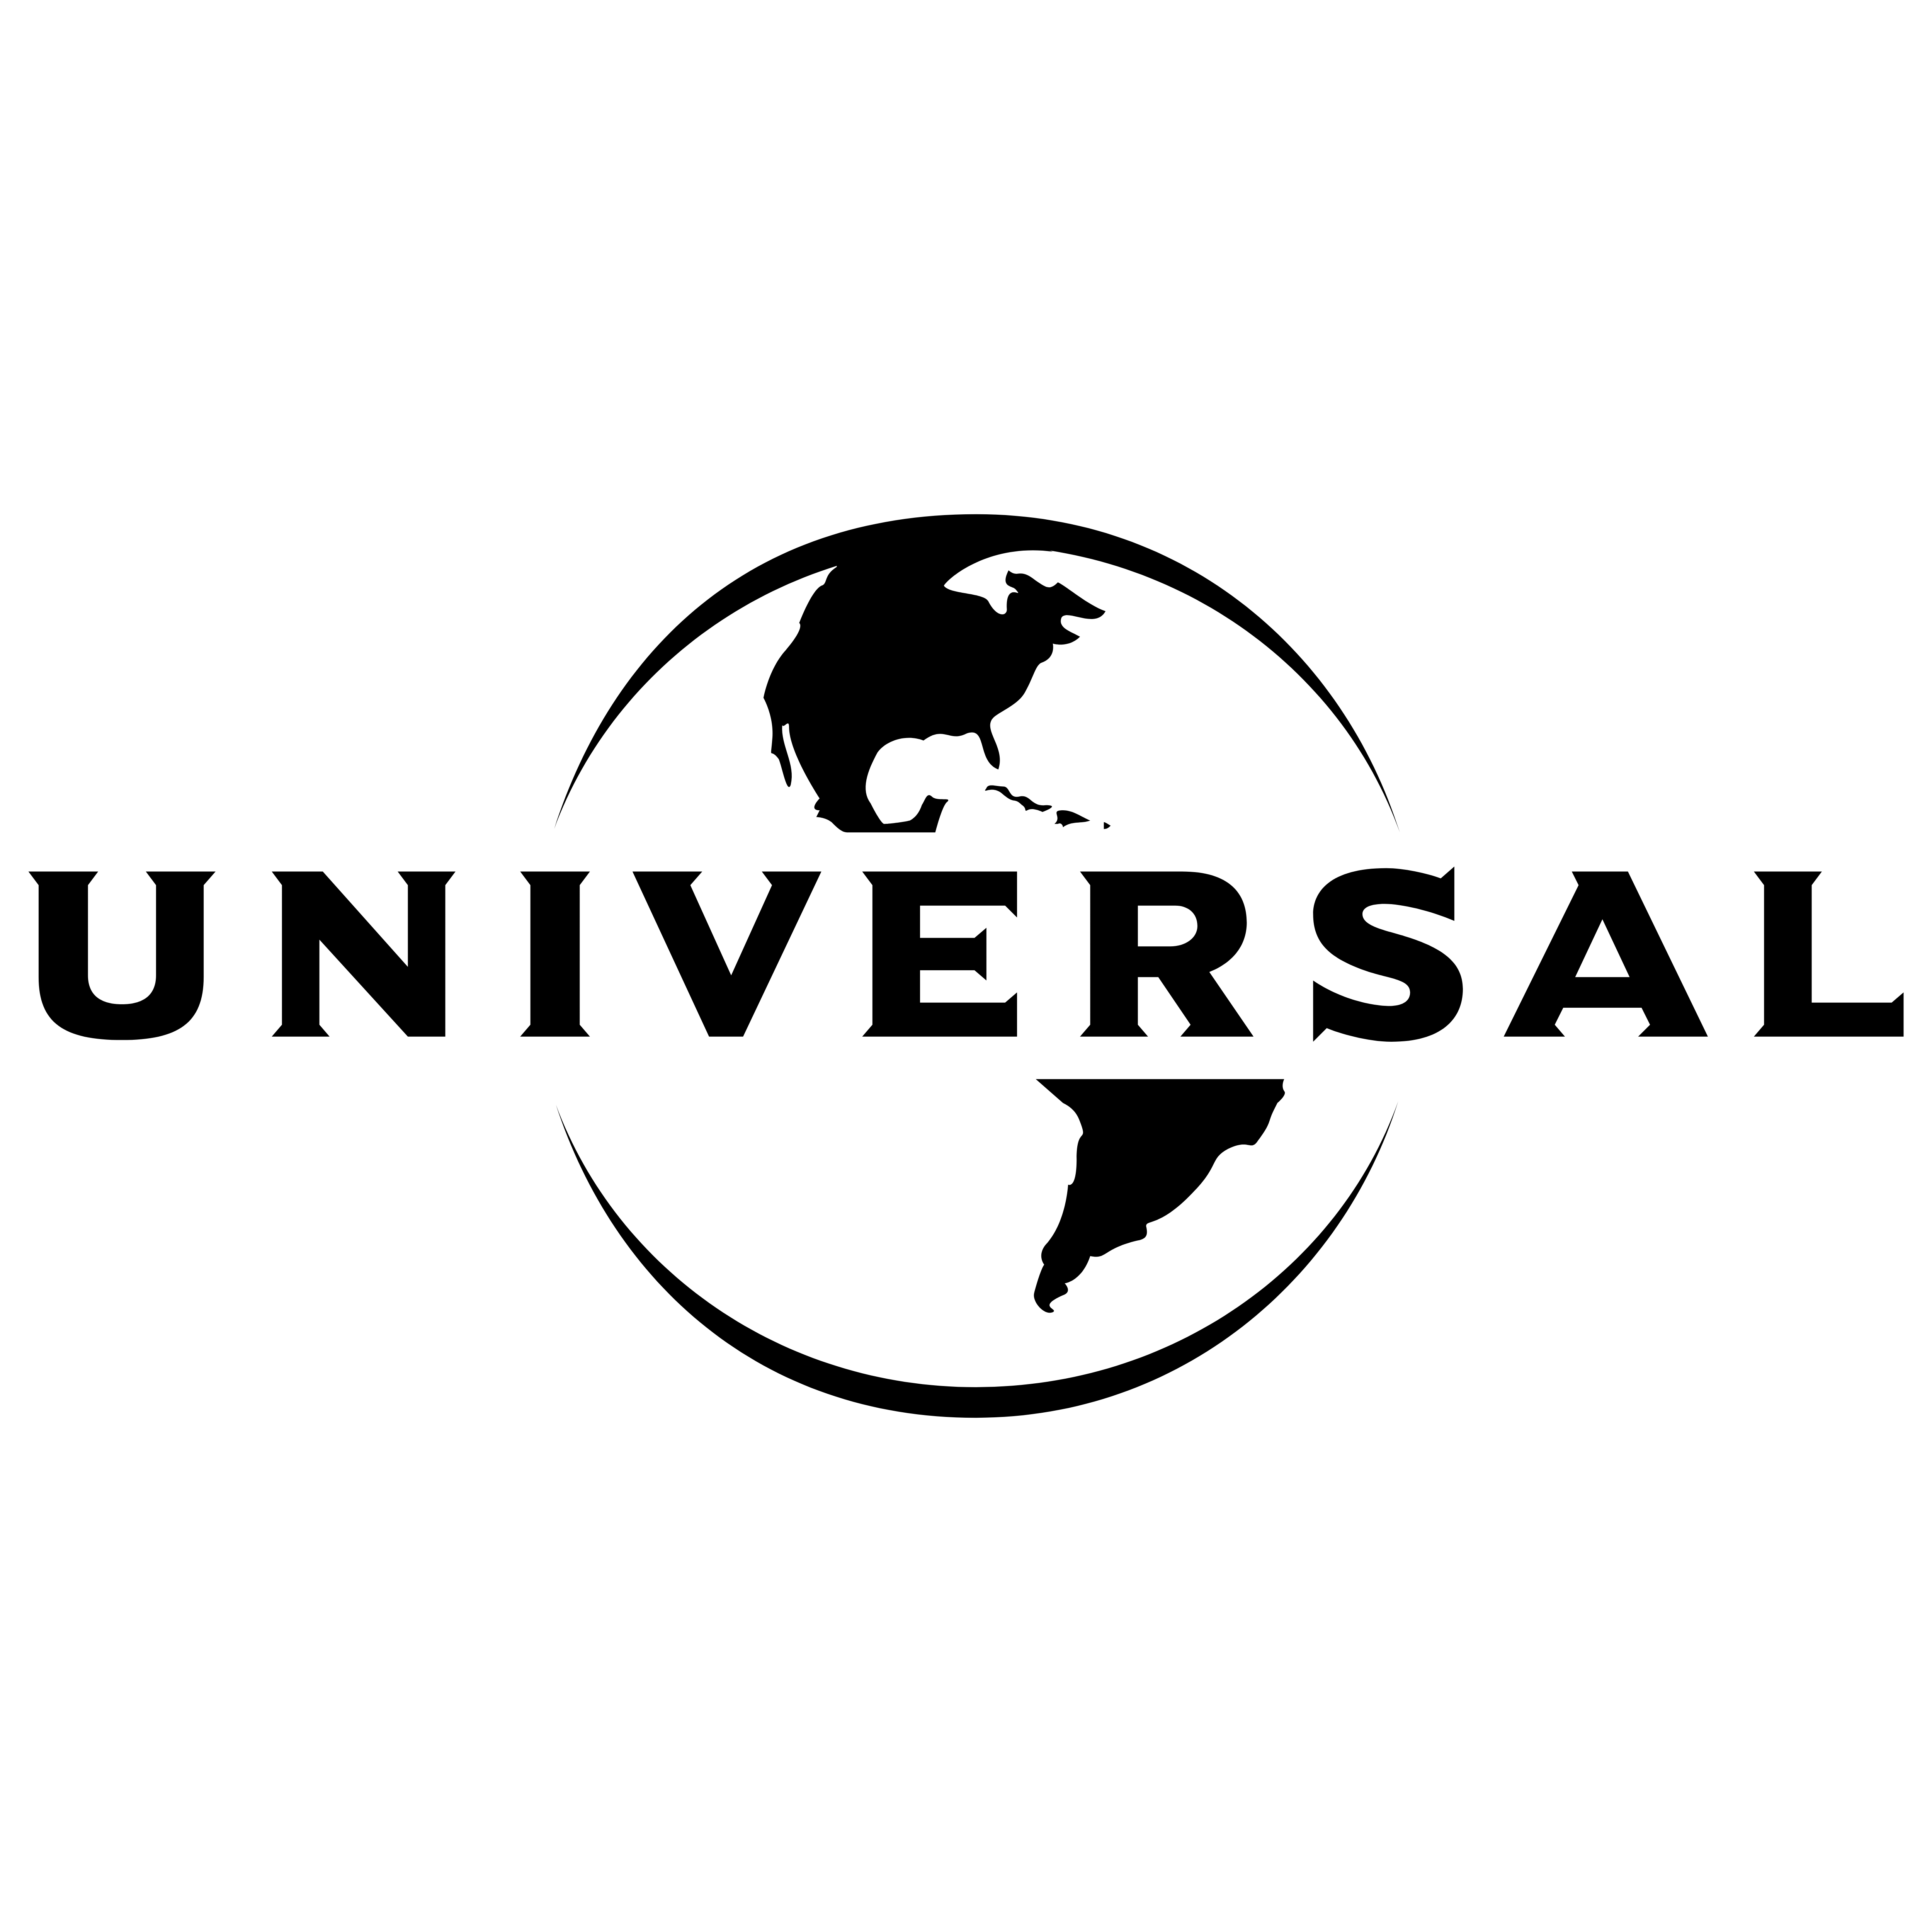 Universal Logo - Universal – Logos Download